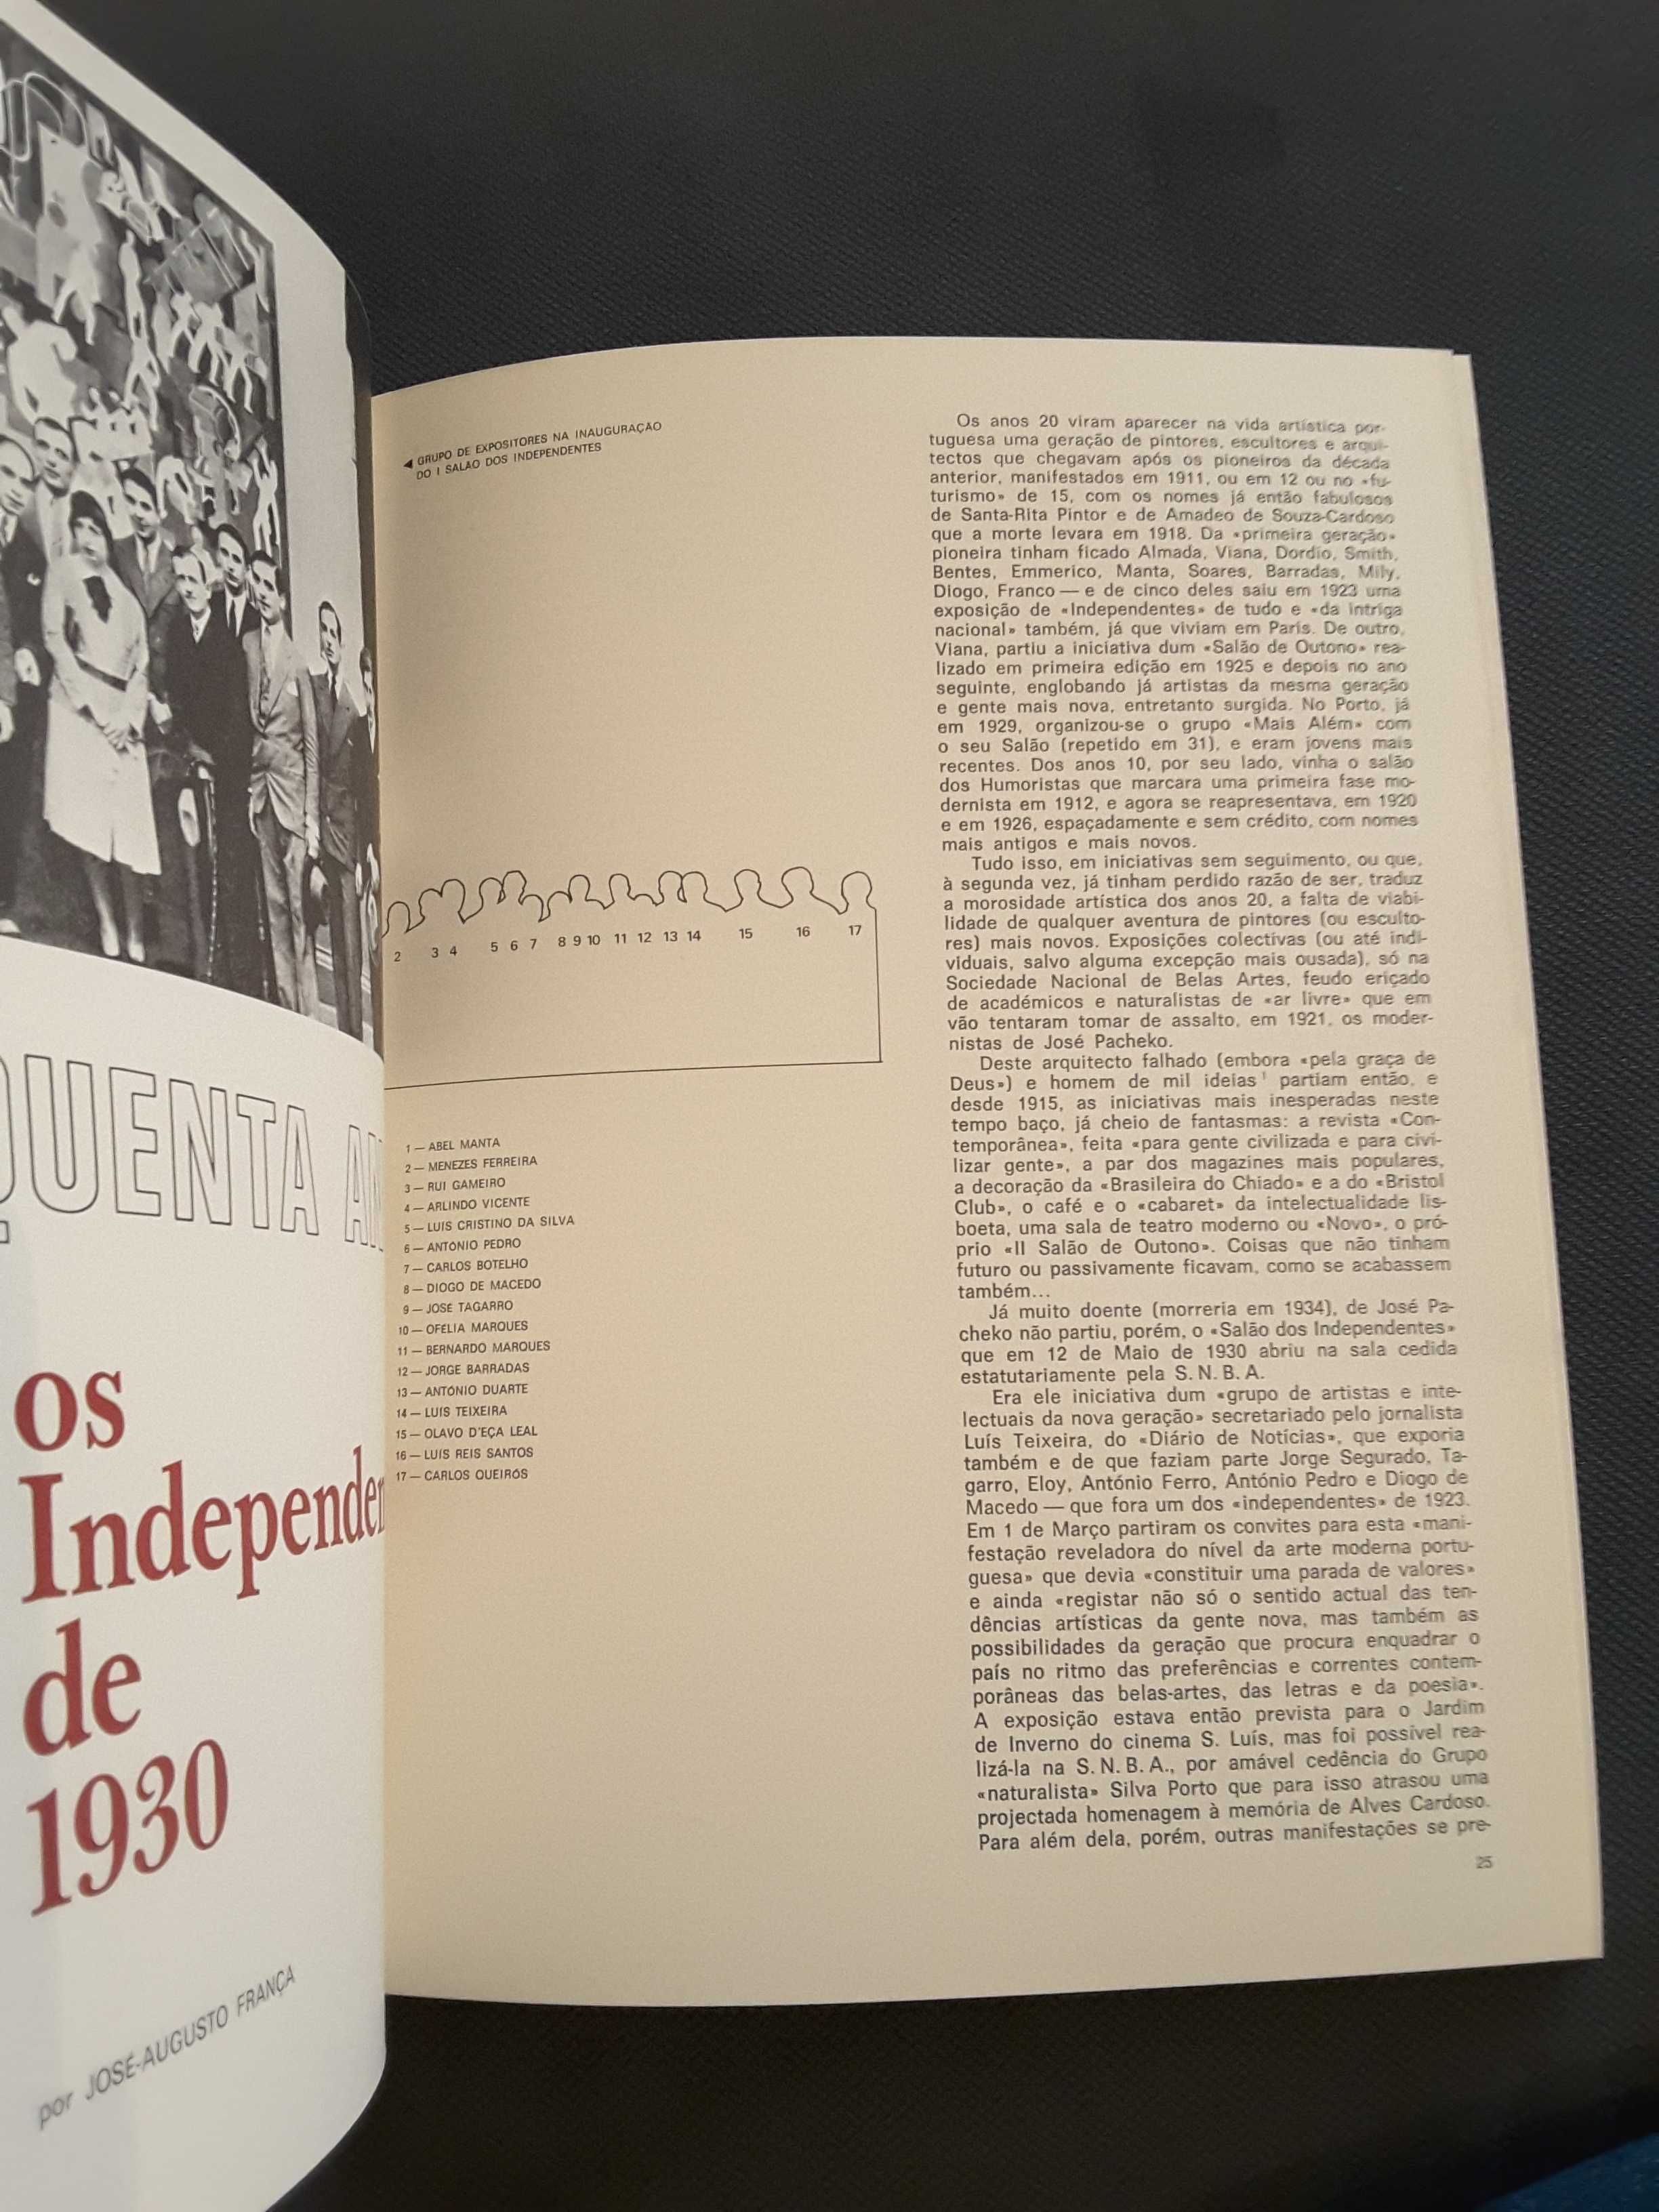 Os Independentes de 1930 / Lisboa 1949 Exposição Surrealista